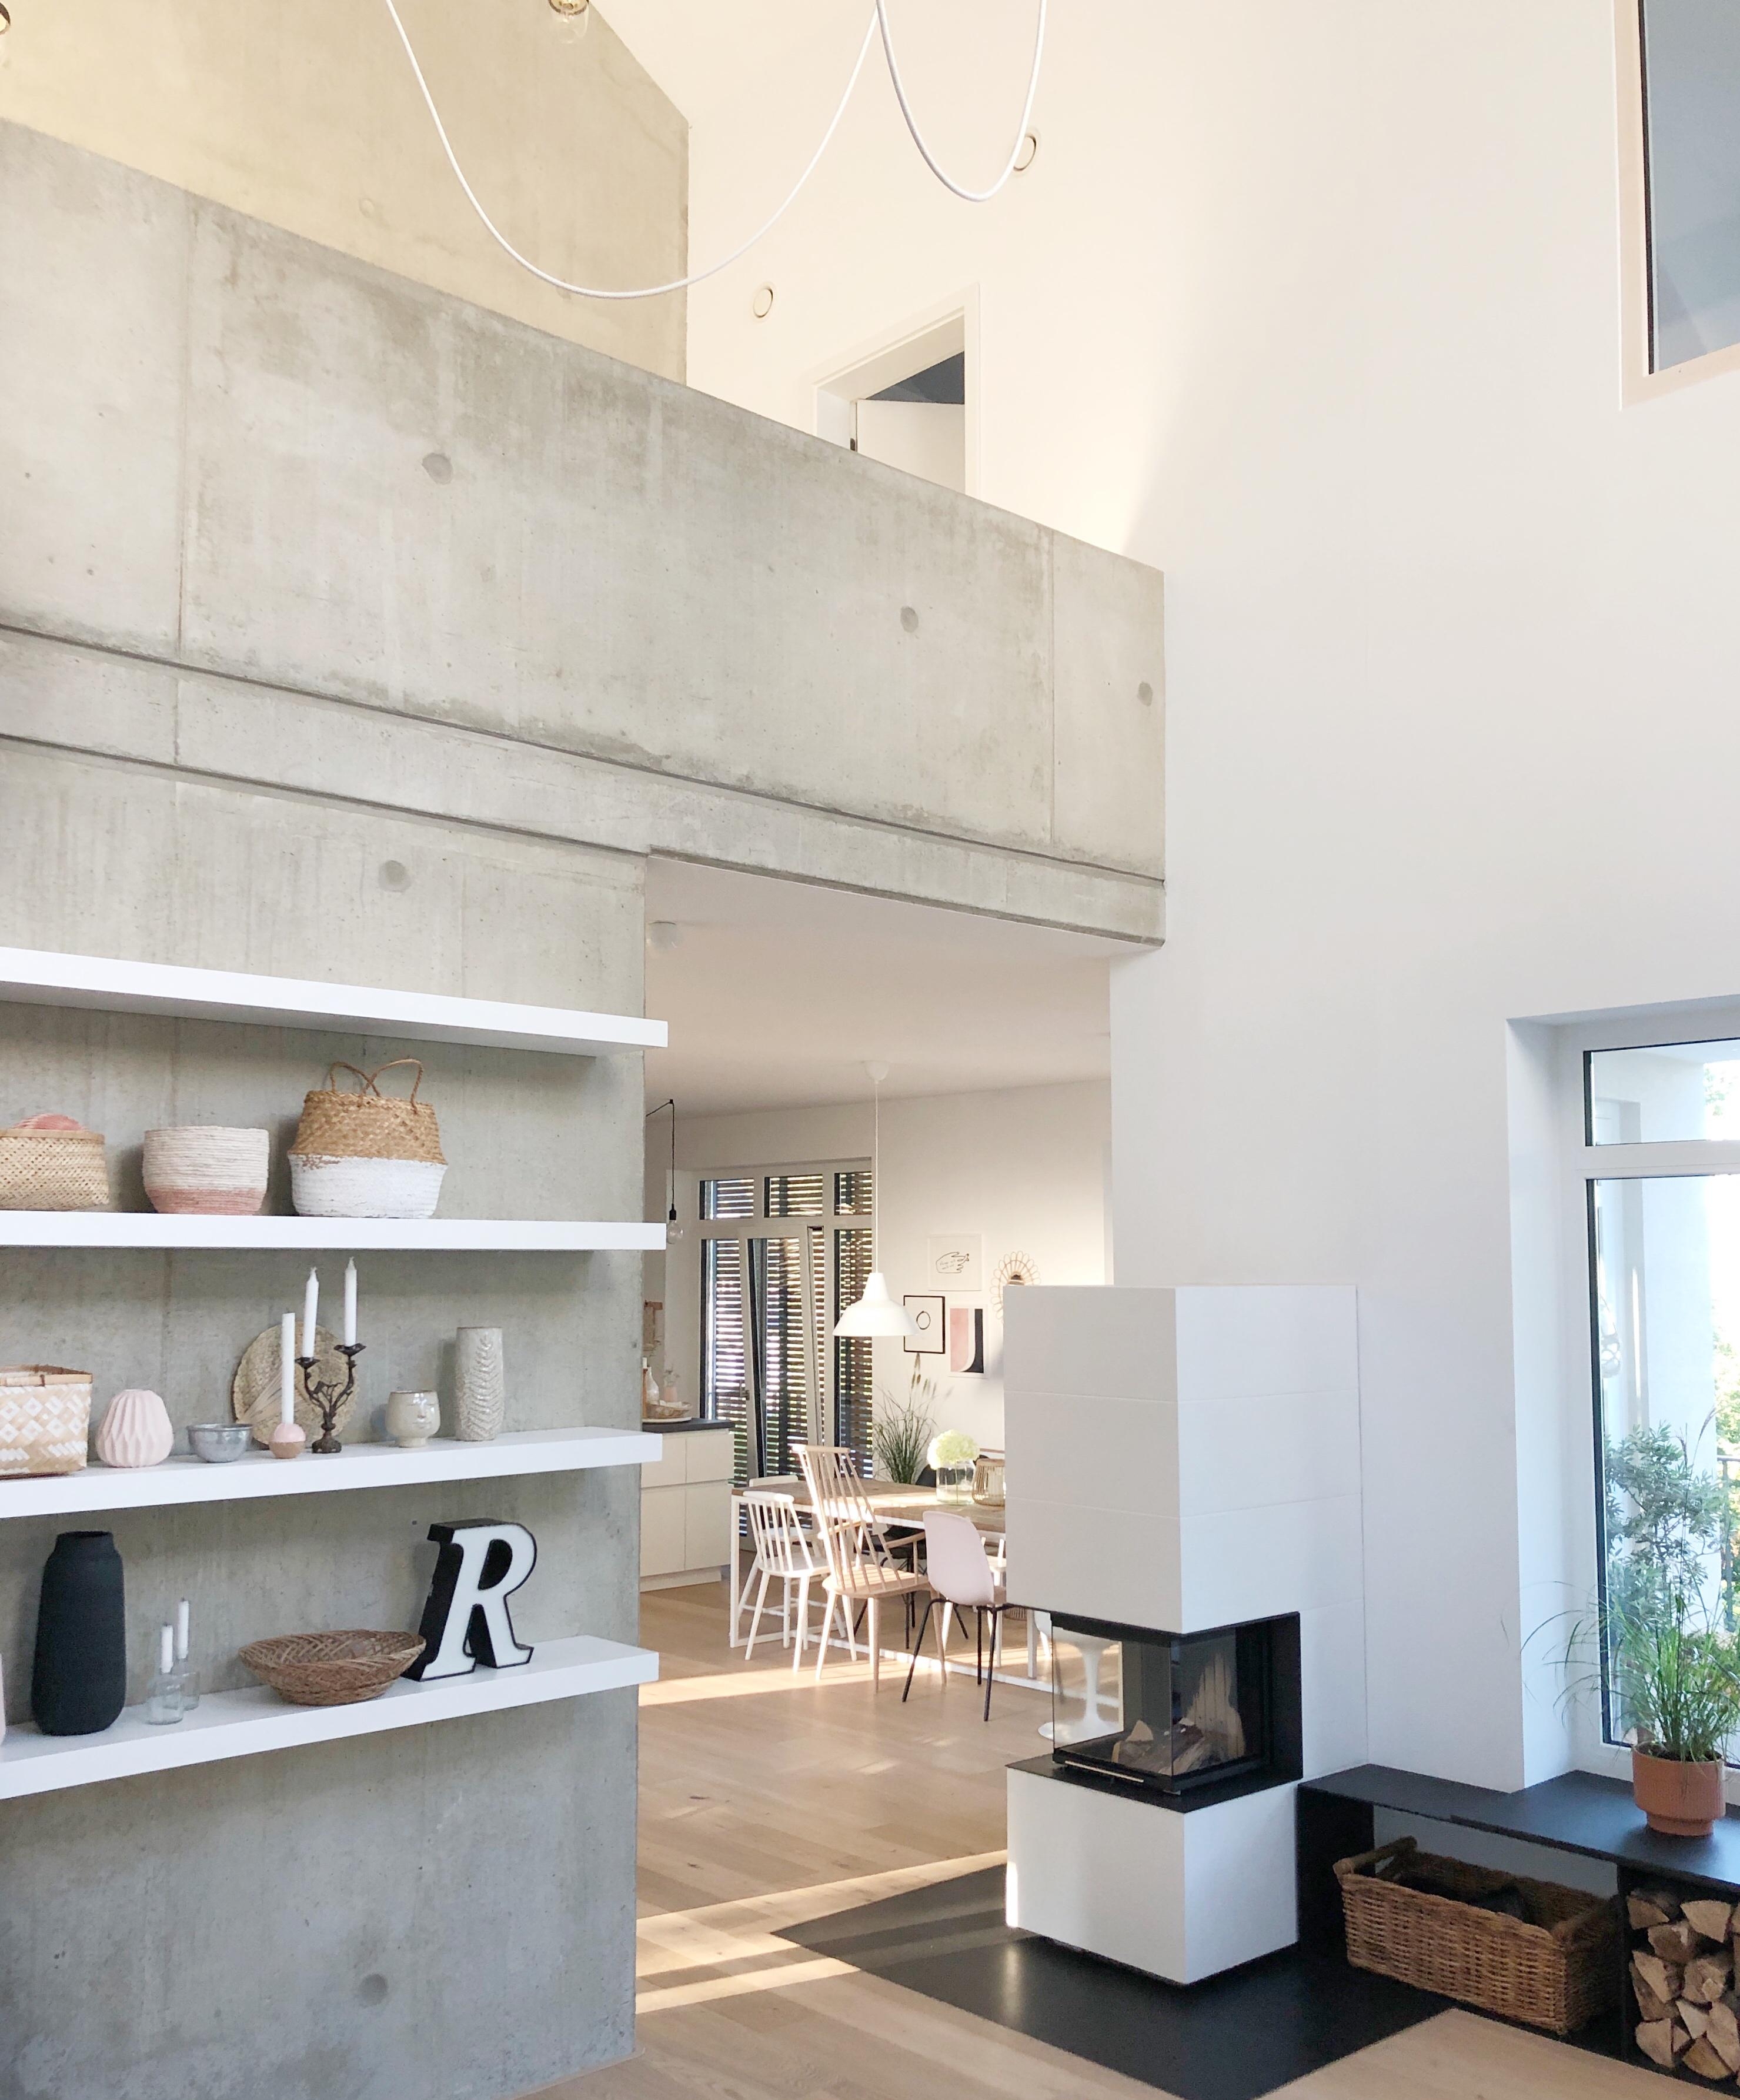 Über zwei Etagen!
#luftraum#sichtbeton#galerie#beton#whitehome#minimalism#easyliving#wohnzimmer